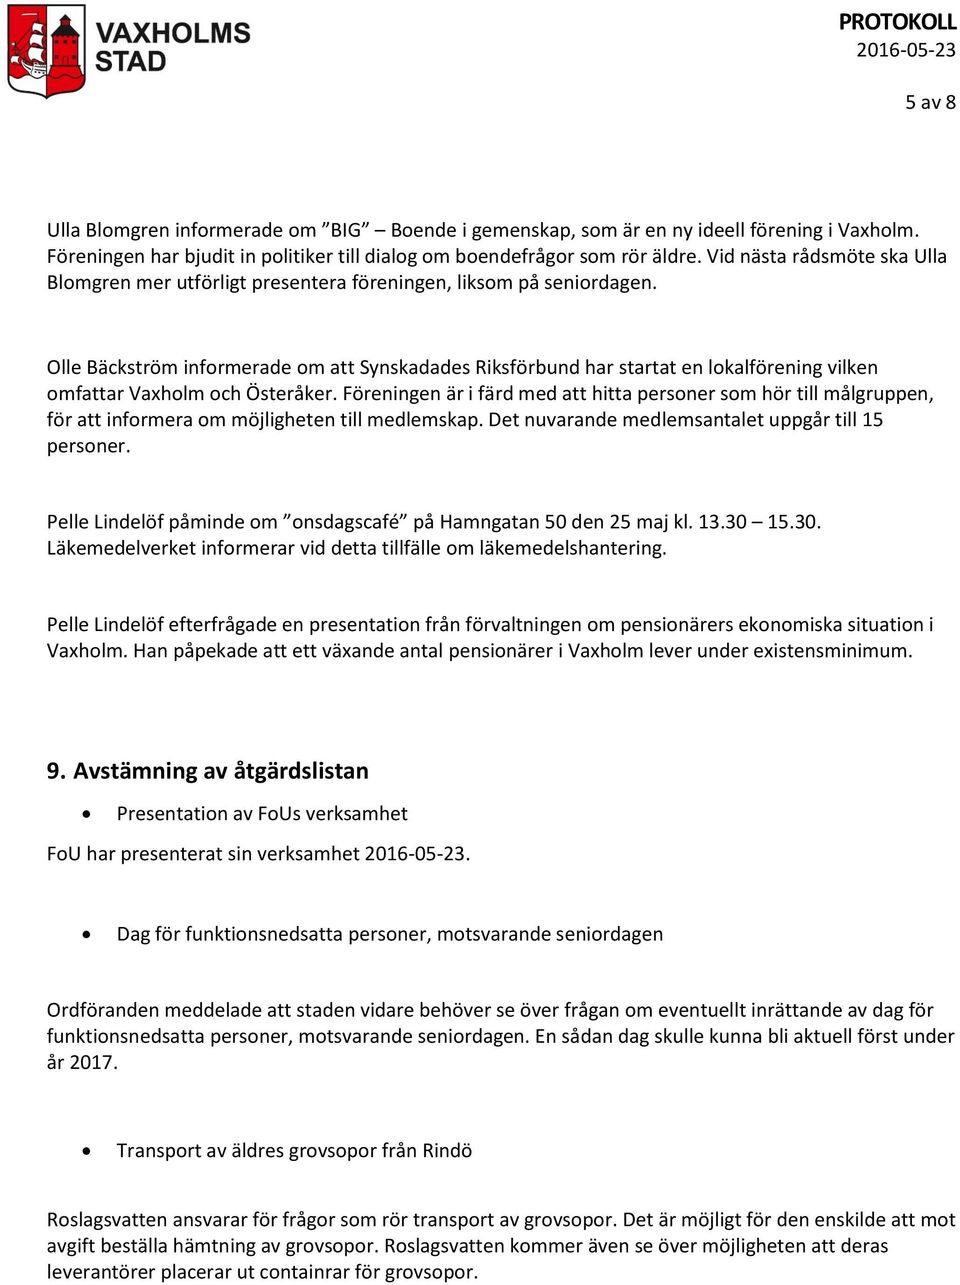 Olle Bäckström informerade om att Synskadades Riksförbund har startat en lokalförening vilken omfattar Vaxholm och Österåker.